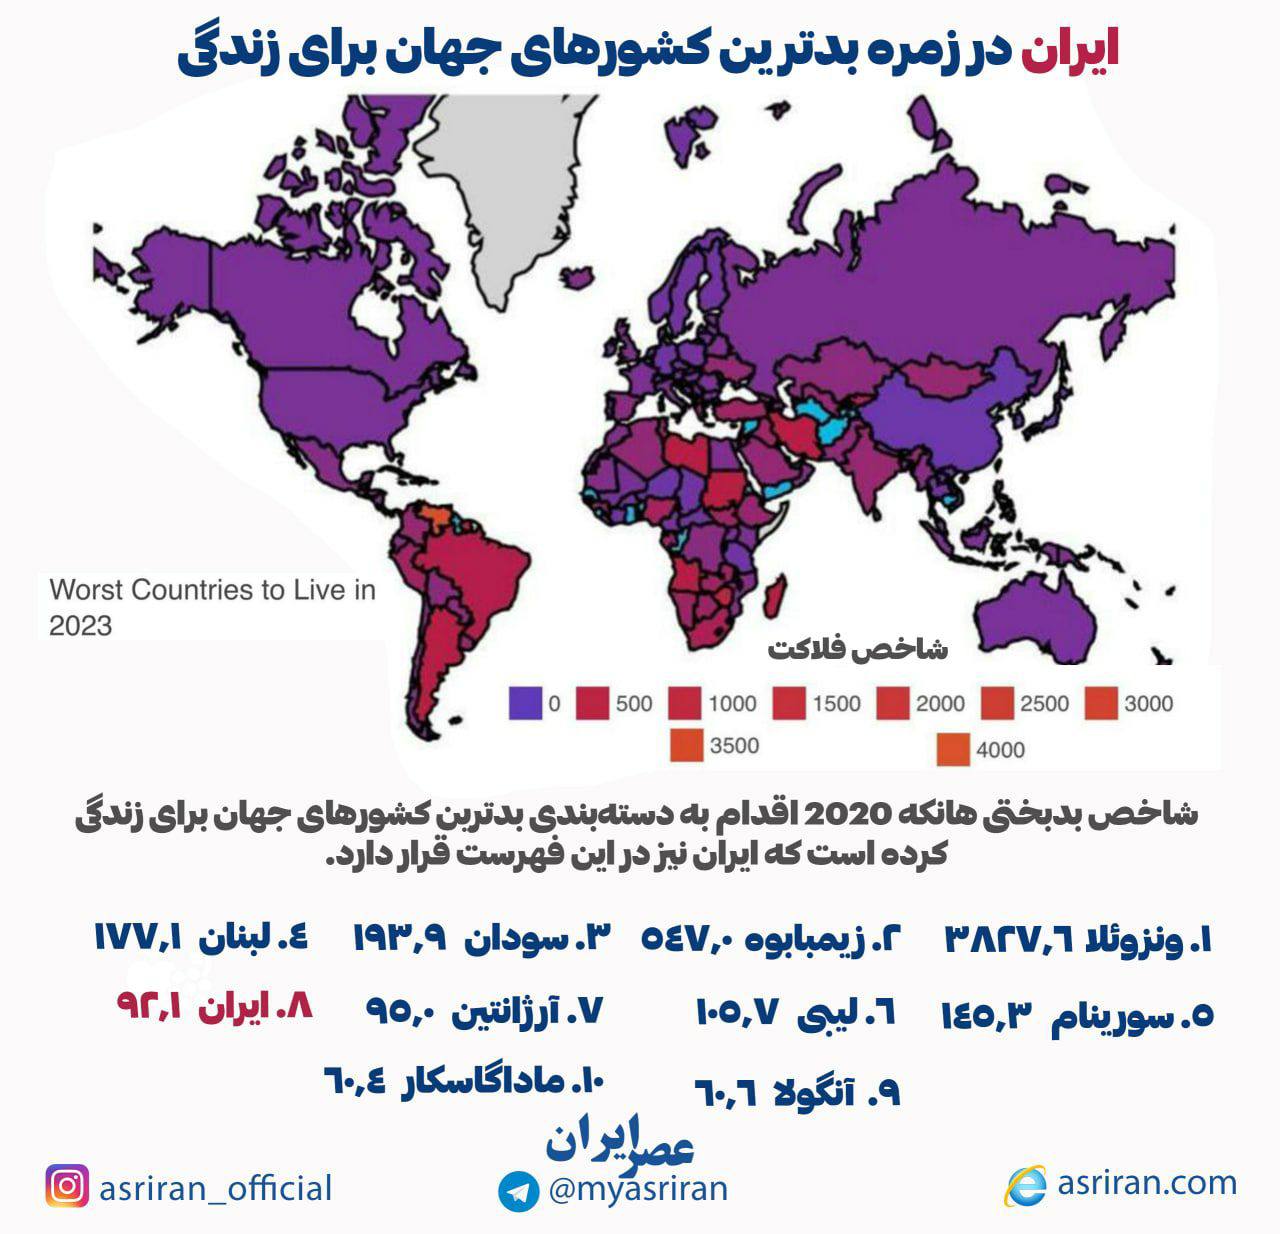 ایران در زمره بدترین کشورهای جهان برای زندگی